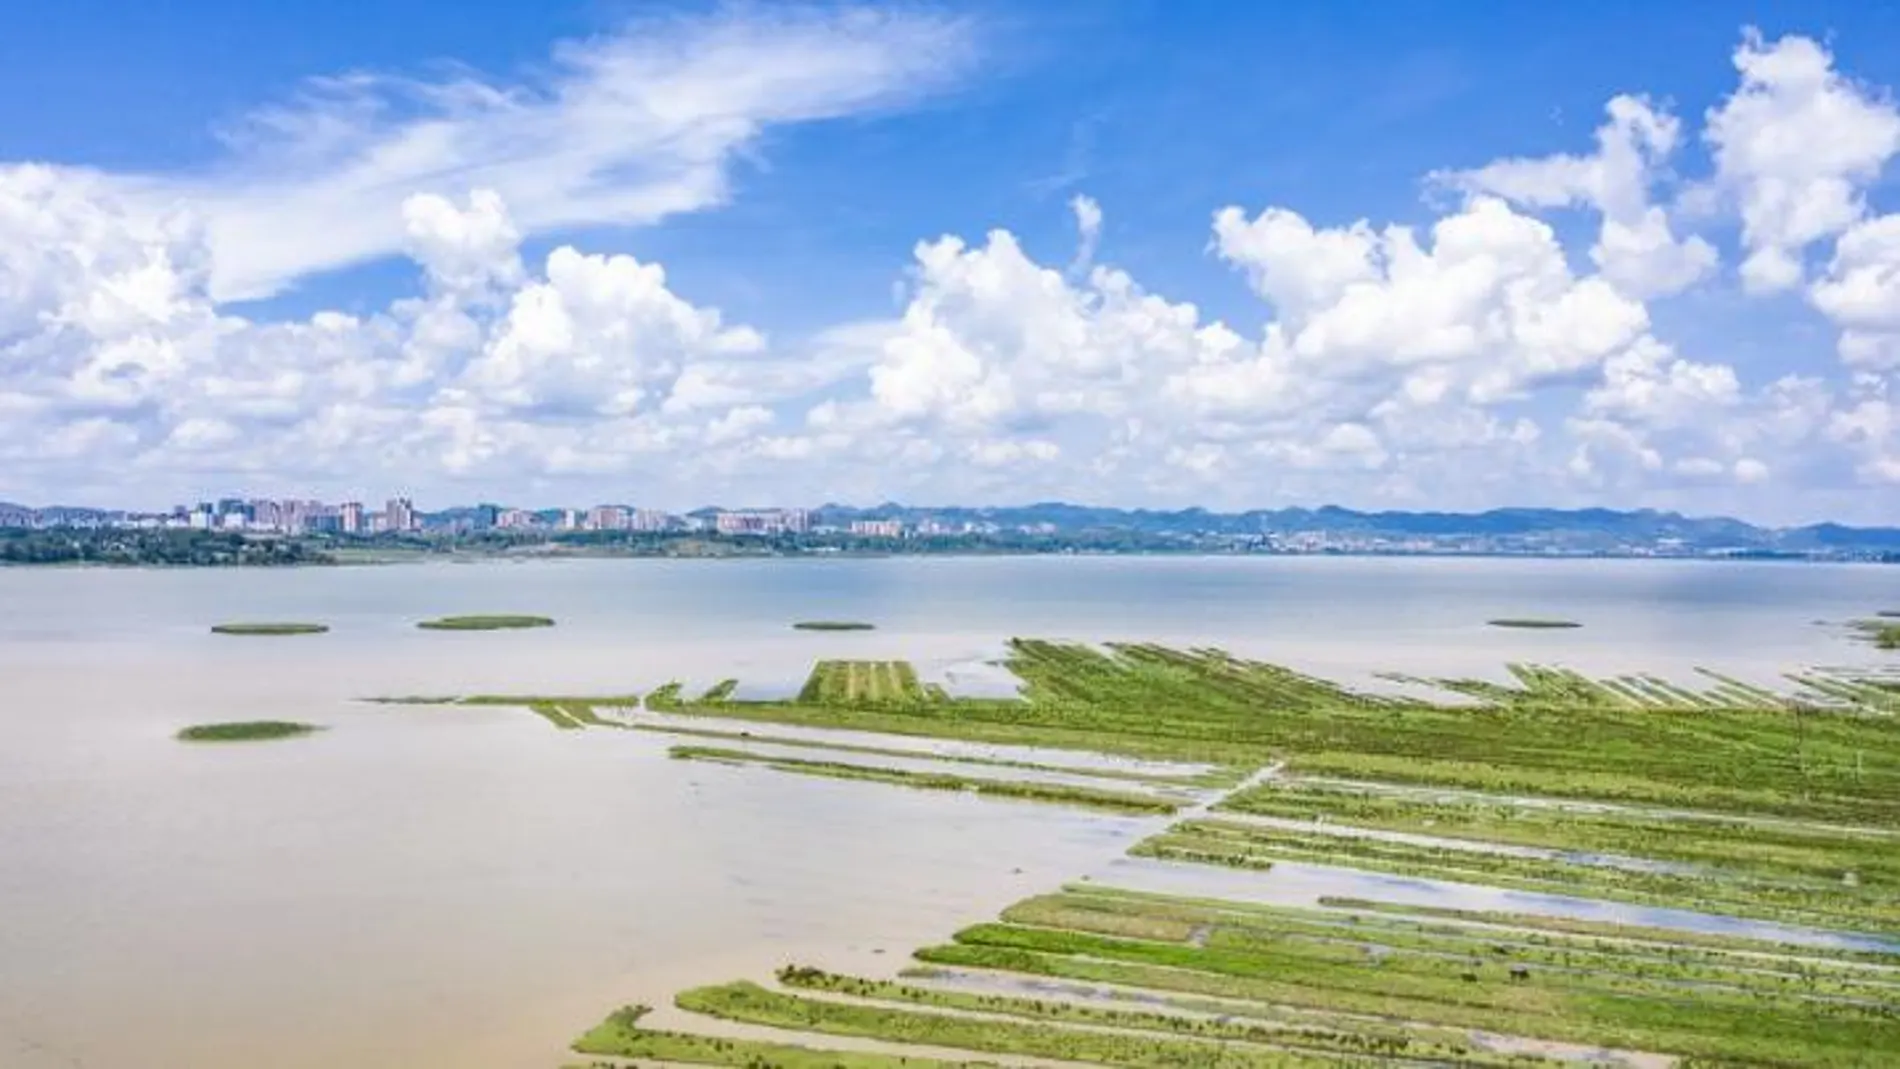 Vista aérea panorámica de la Reserva Natural de Caohai en el distrito autónomo de las etnias yi, hui y miao de Weining, en la provincia suroccidental china de Guizhou, el 7 de julio de 2021.